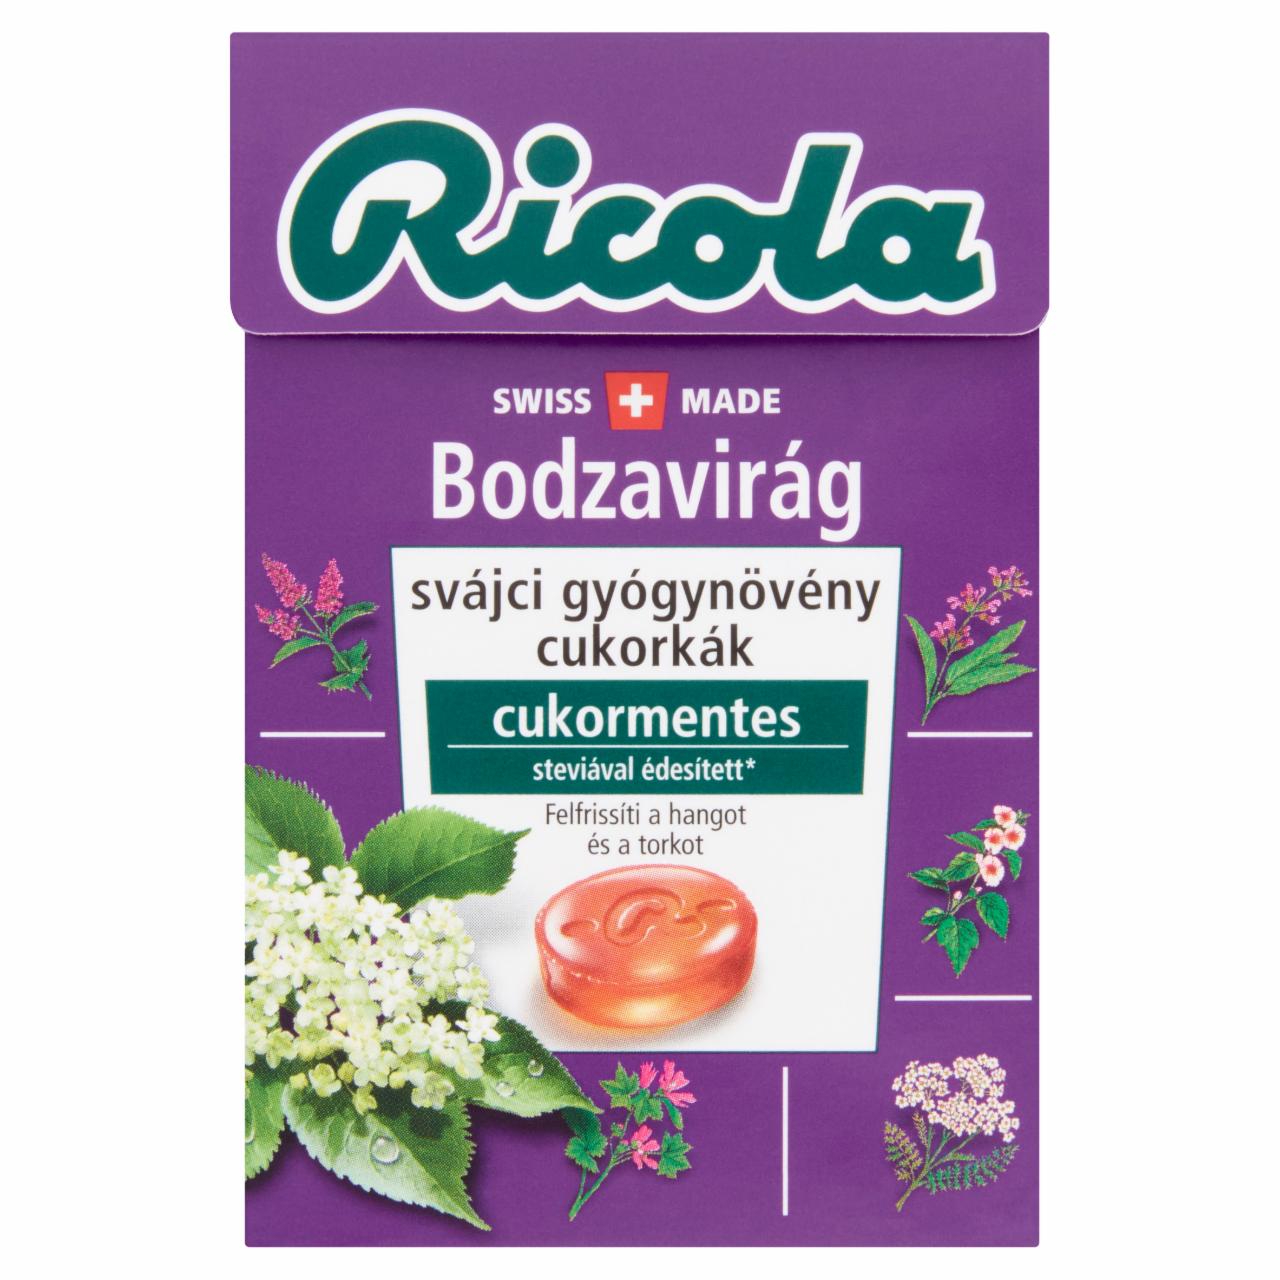 Képek - Ricola Bodzavirág cukormentes svájci gyógynövény cukorkák édesítőszerekkel 40 g